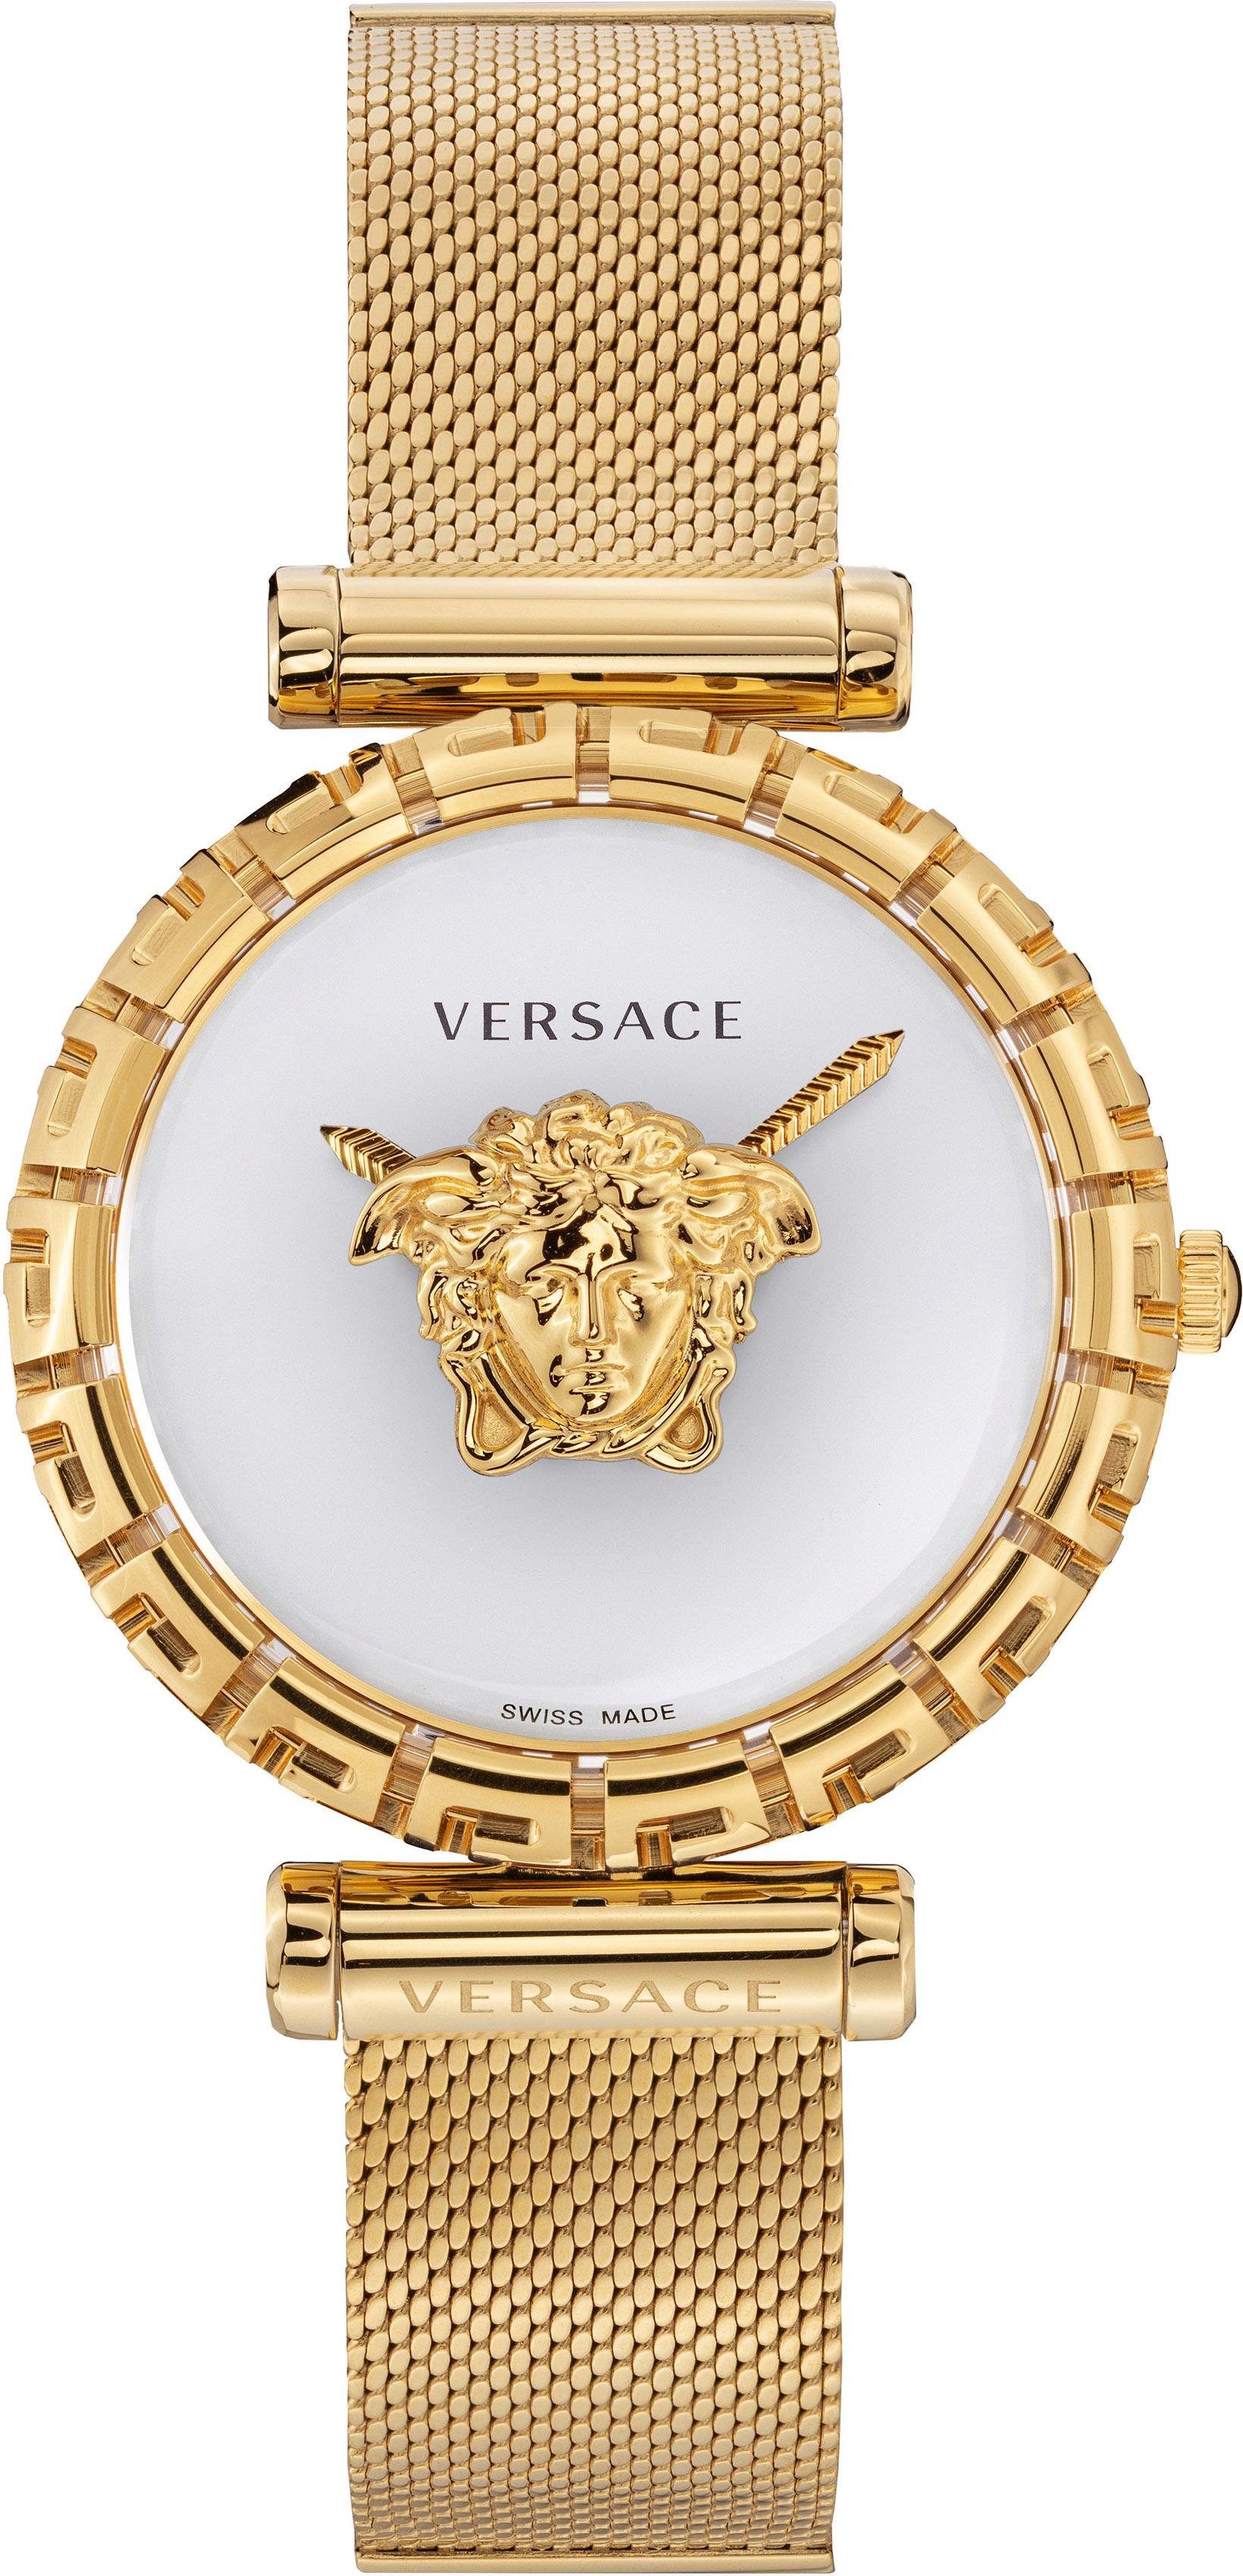 Versace Schweizer Uhr »Palazzo Empire Greca, VEDV00619« online kaufen | OTTO